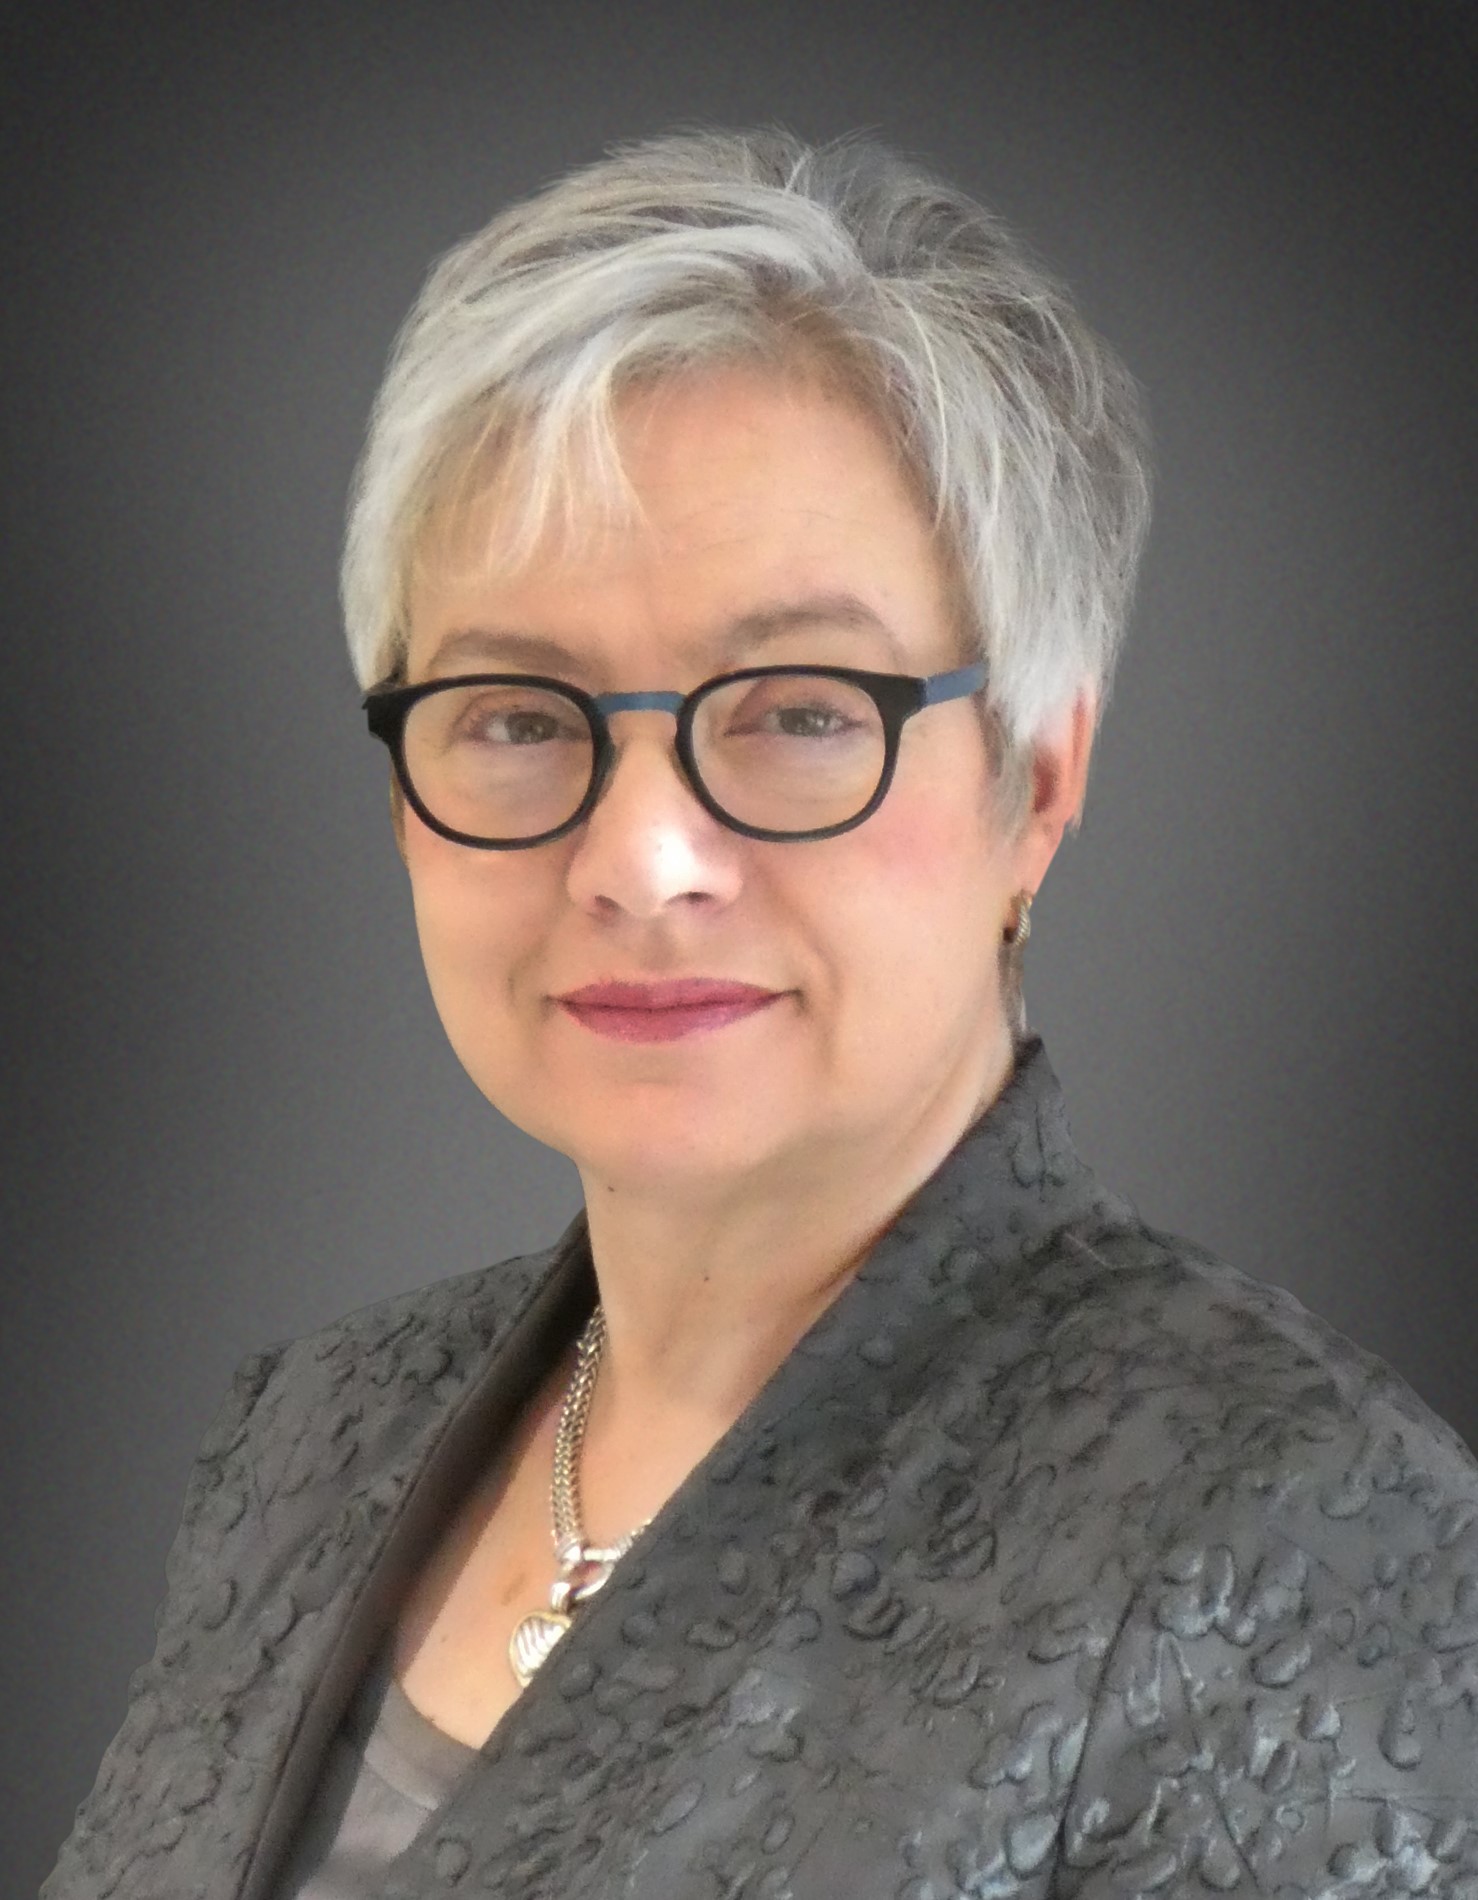 Manon Brassard, sous-ministre et présidente de Développement économique Canada pour les régions du Québec.